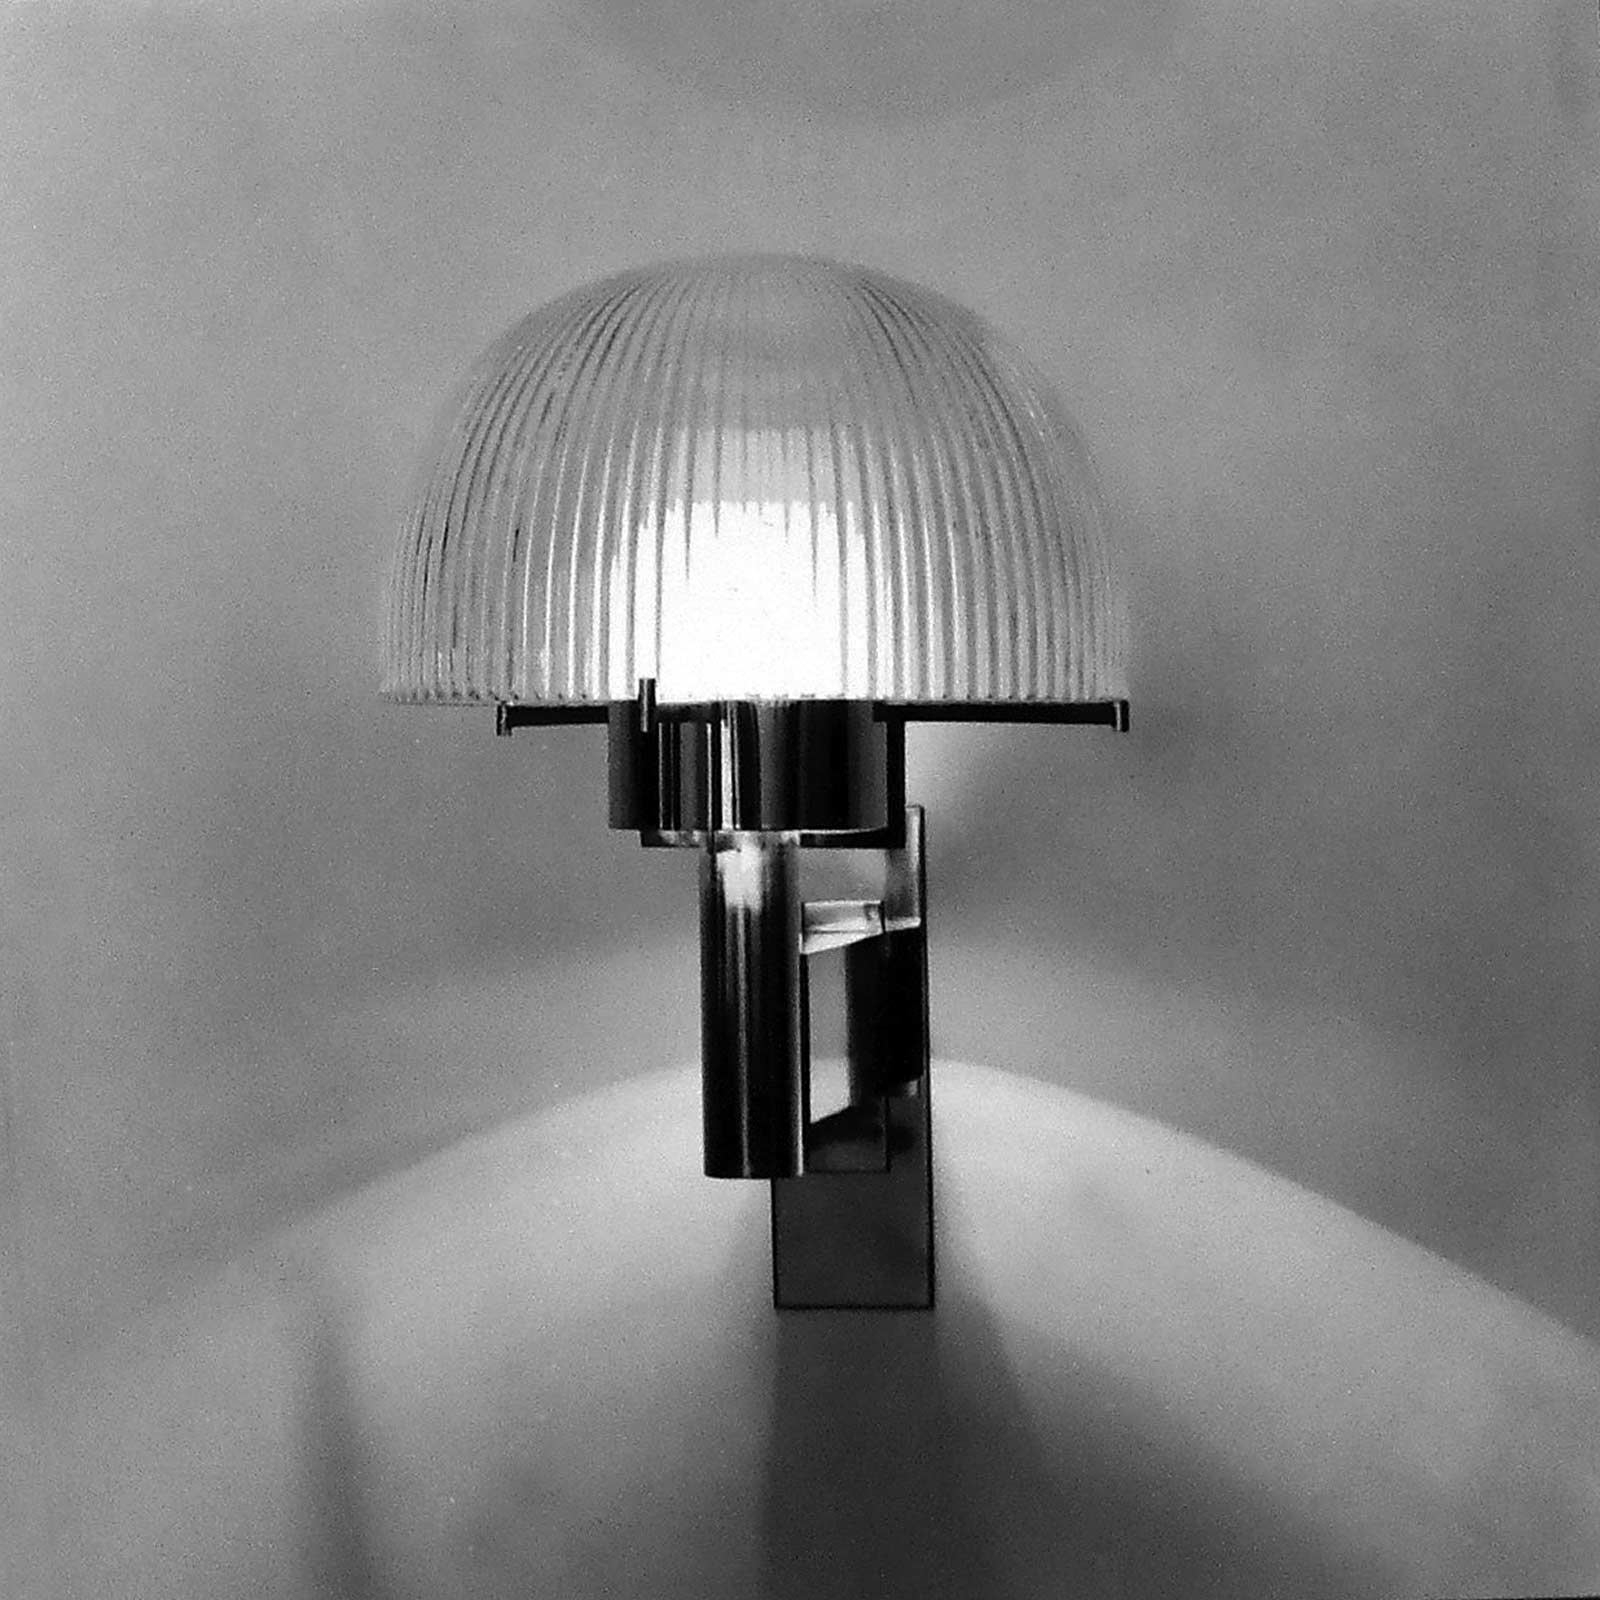 Prov.Vägglampa med fastblåst räfflad kupa, blåst i Ängshyttan, Nybro 1967. Foto: John Selbing